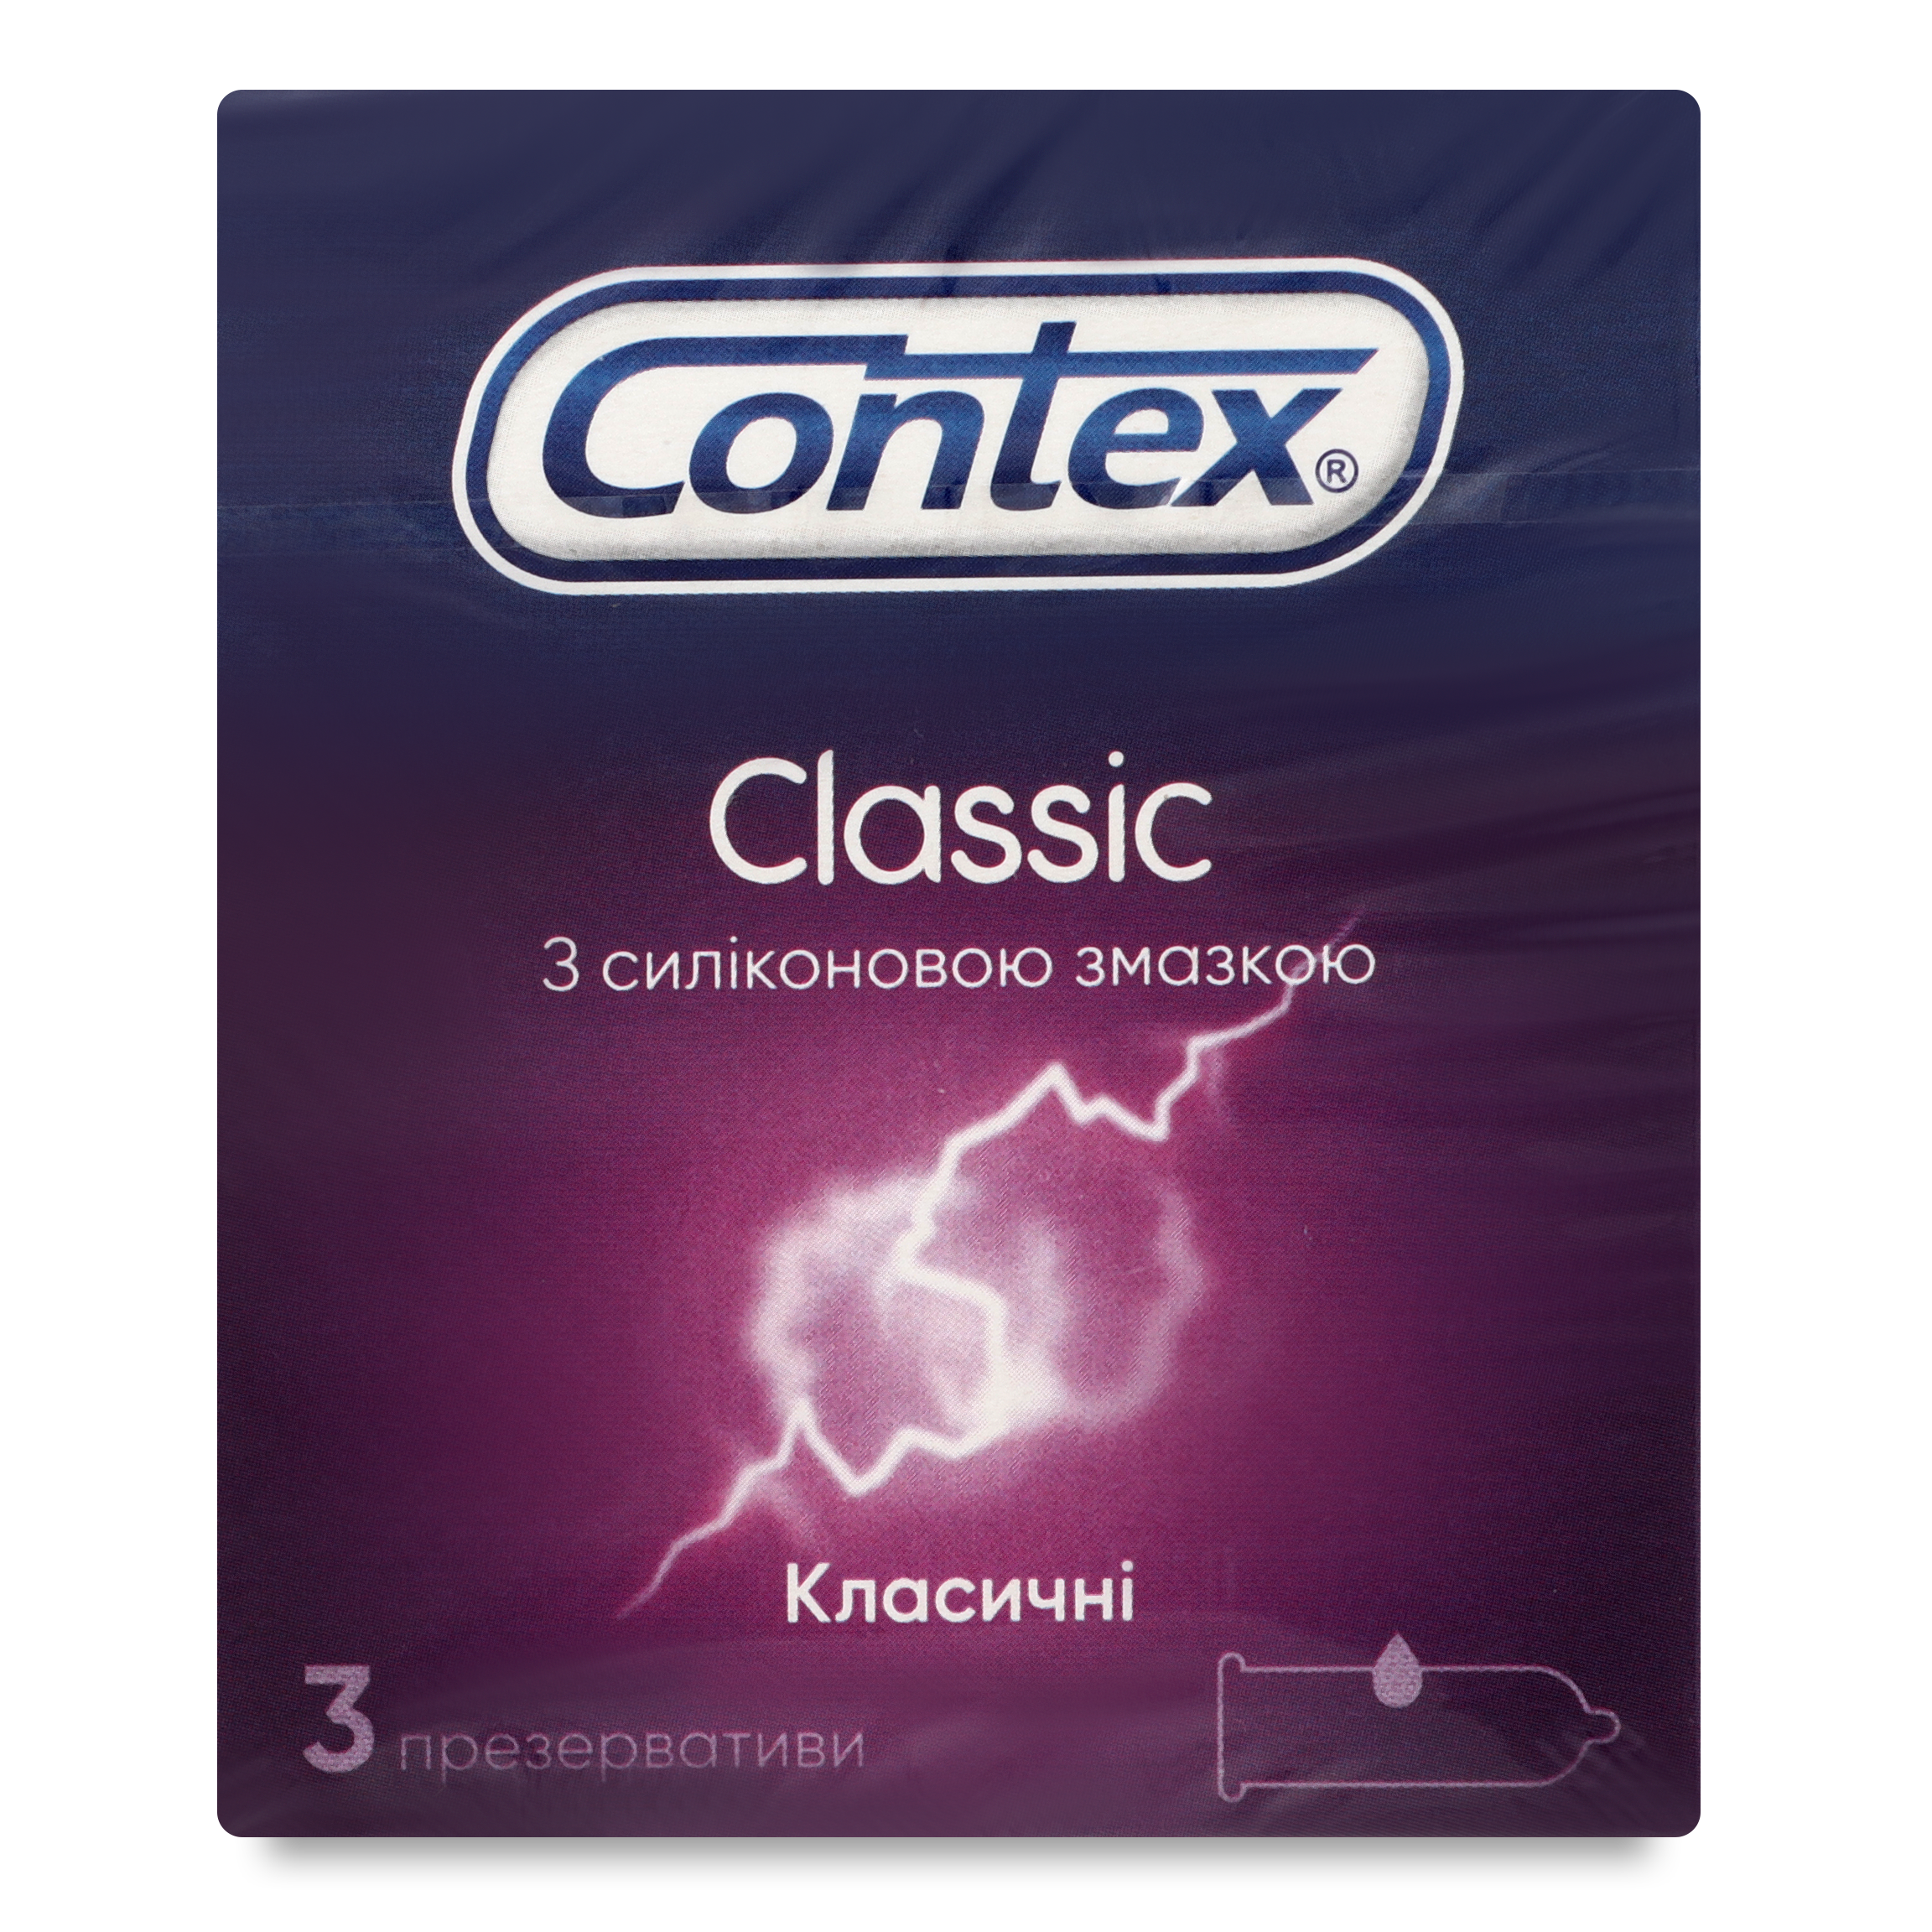 Презервативы Contex Classic латексные с силиконовой смазкой 3шт